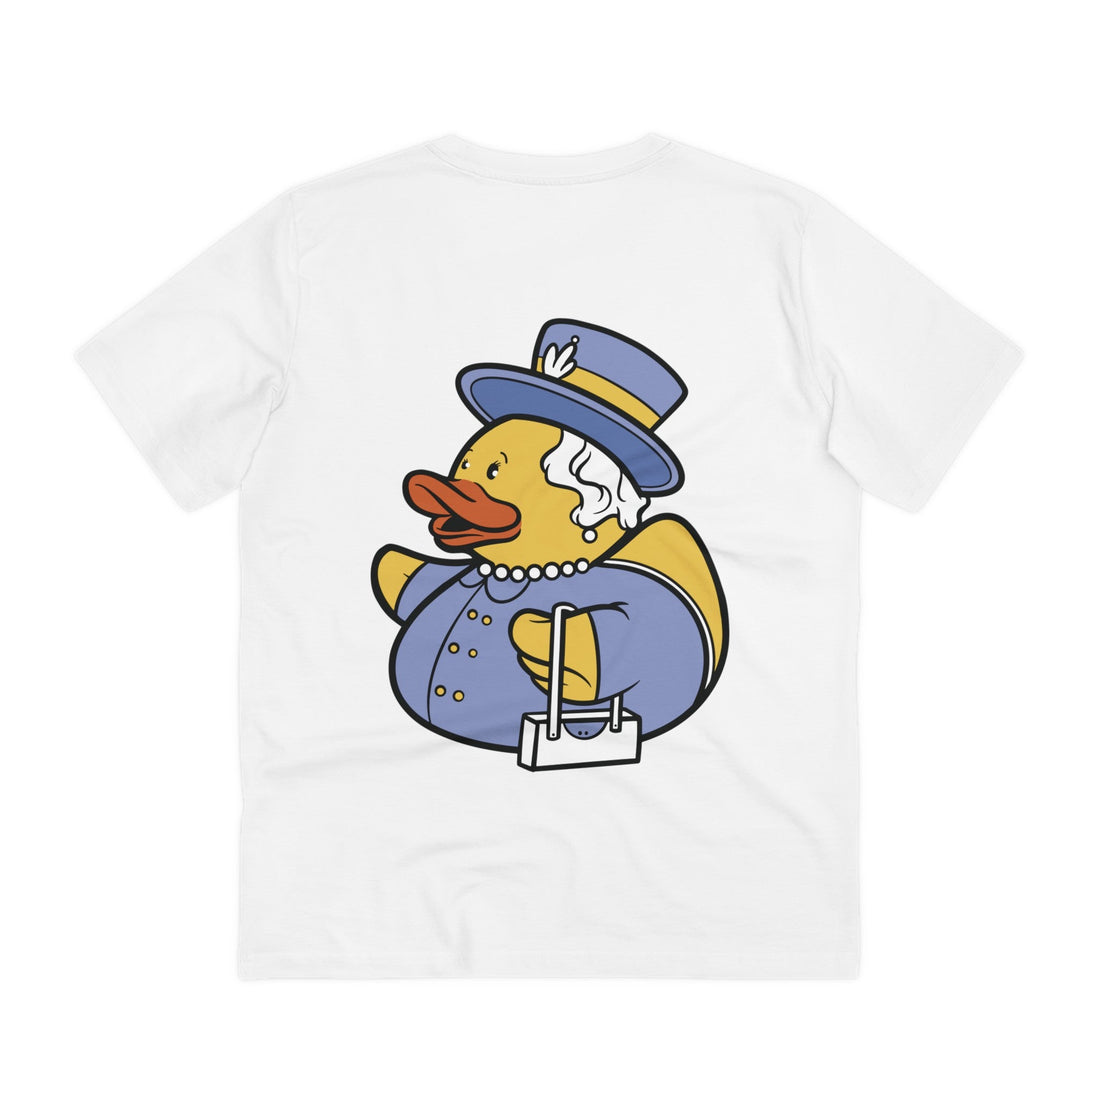 Printify T-Shirt White / 2XS Royal - Rubber Duck - Back Design